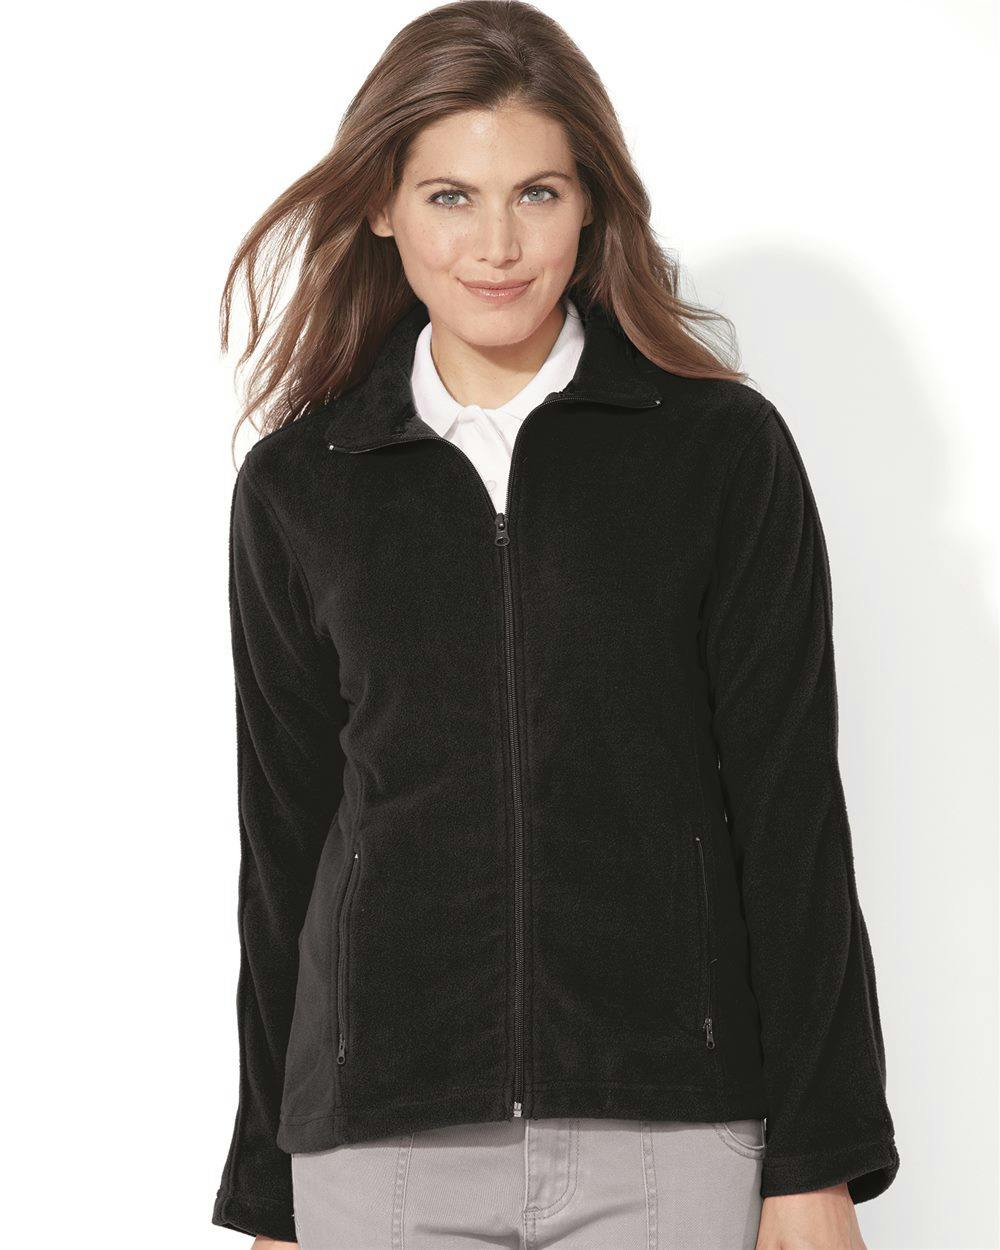 Image for Women's Microfleece Full-Zip Jacket - 5301